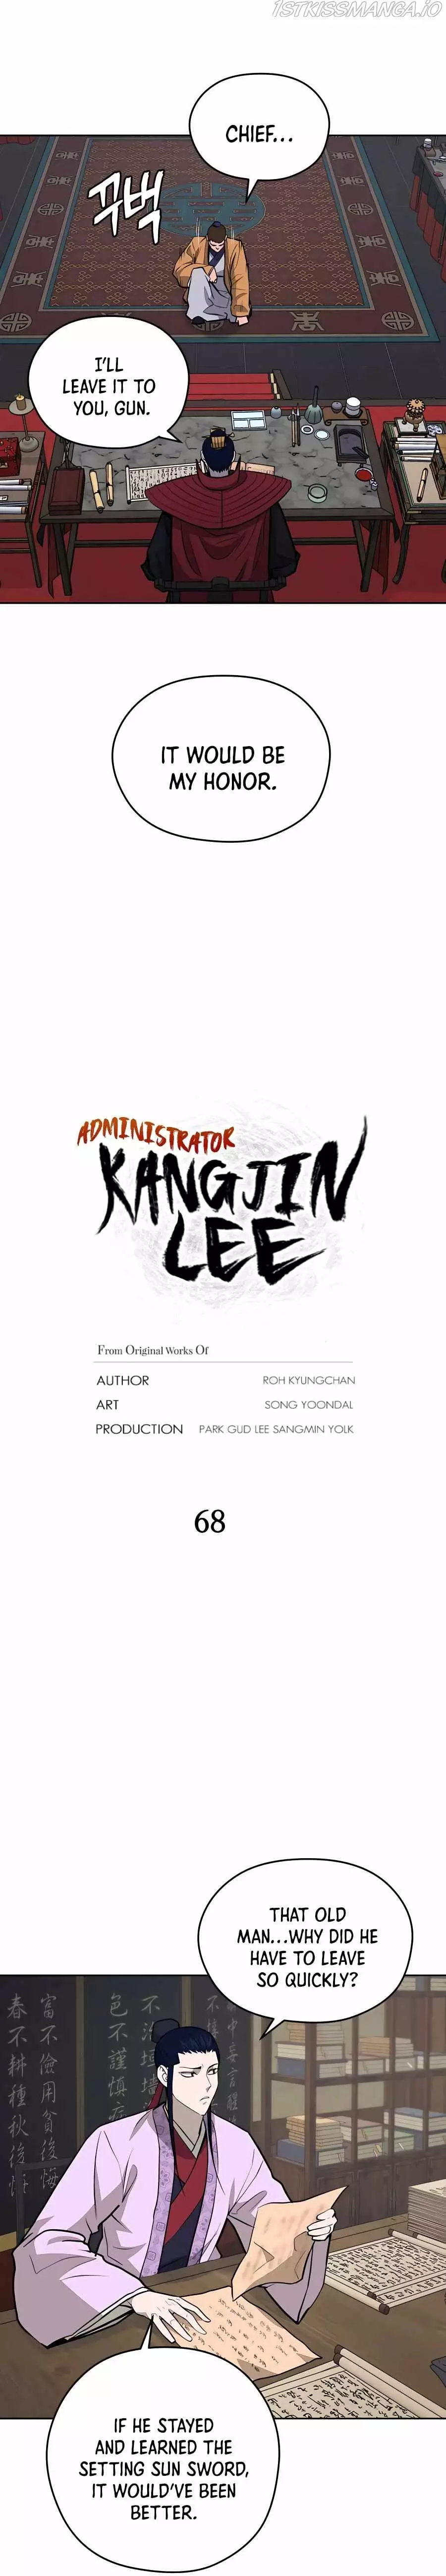 Gwanjeon: Kang Jin Lee - 68 page 6-4fce9760